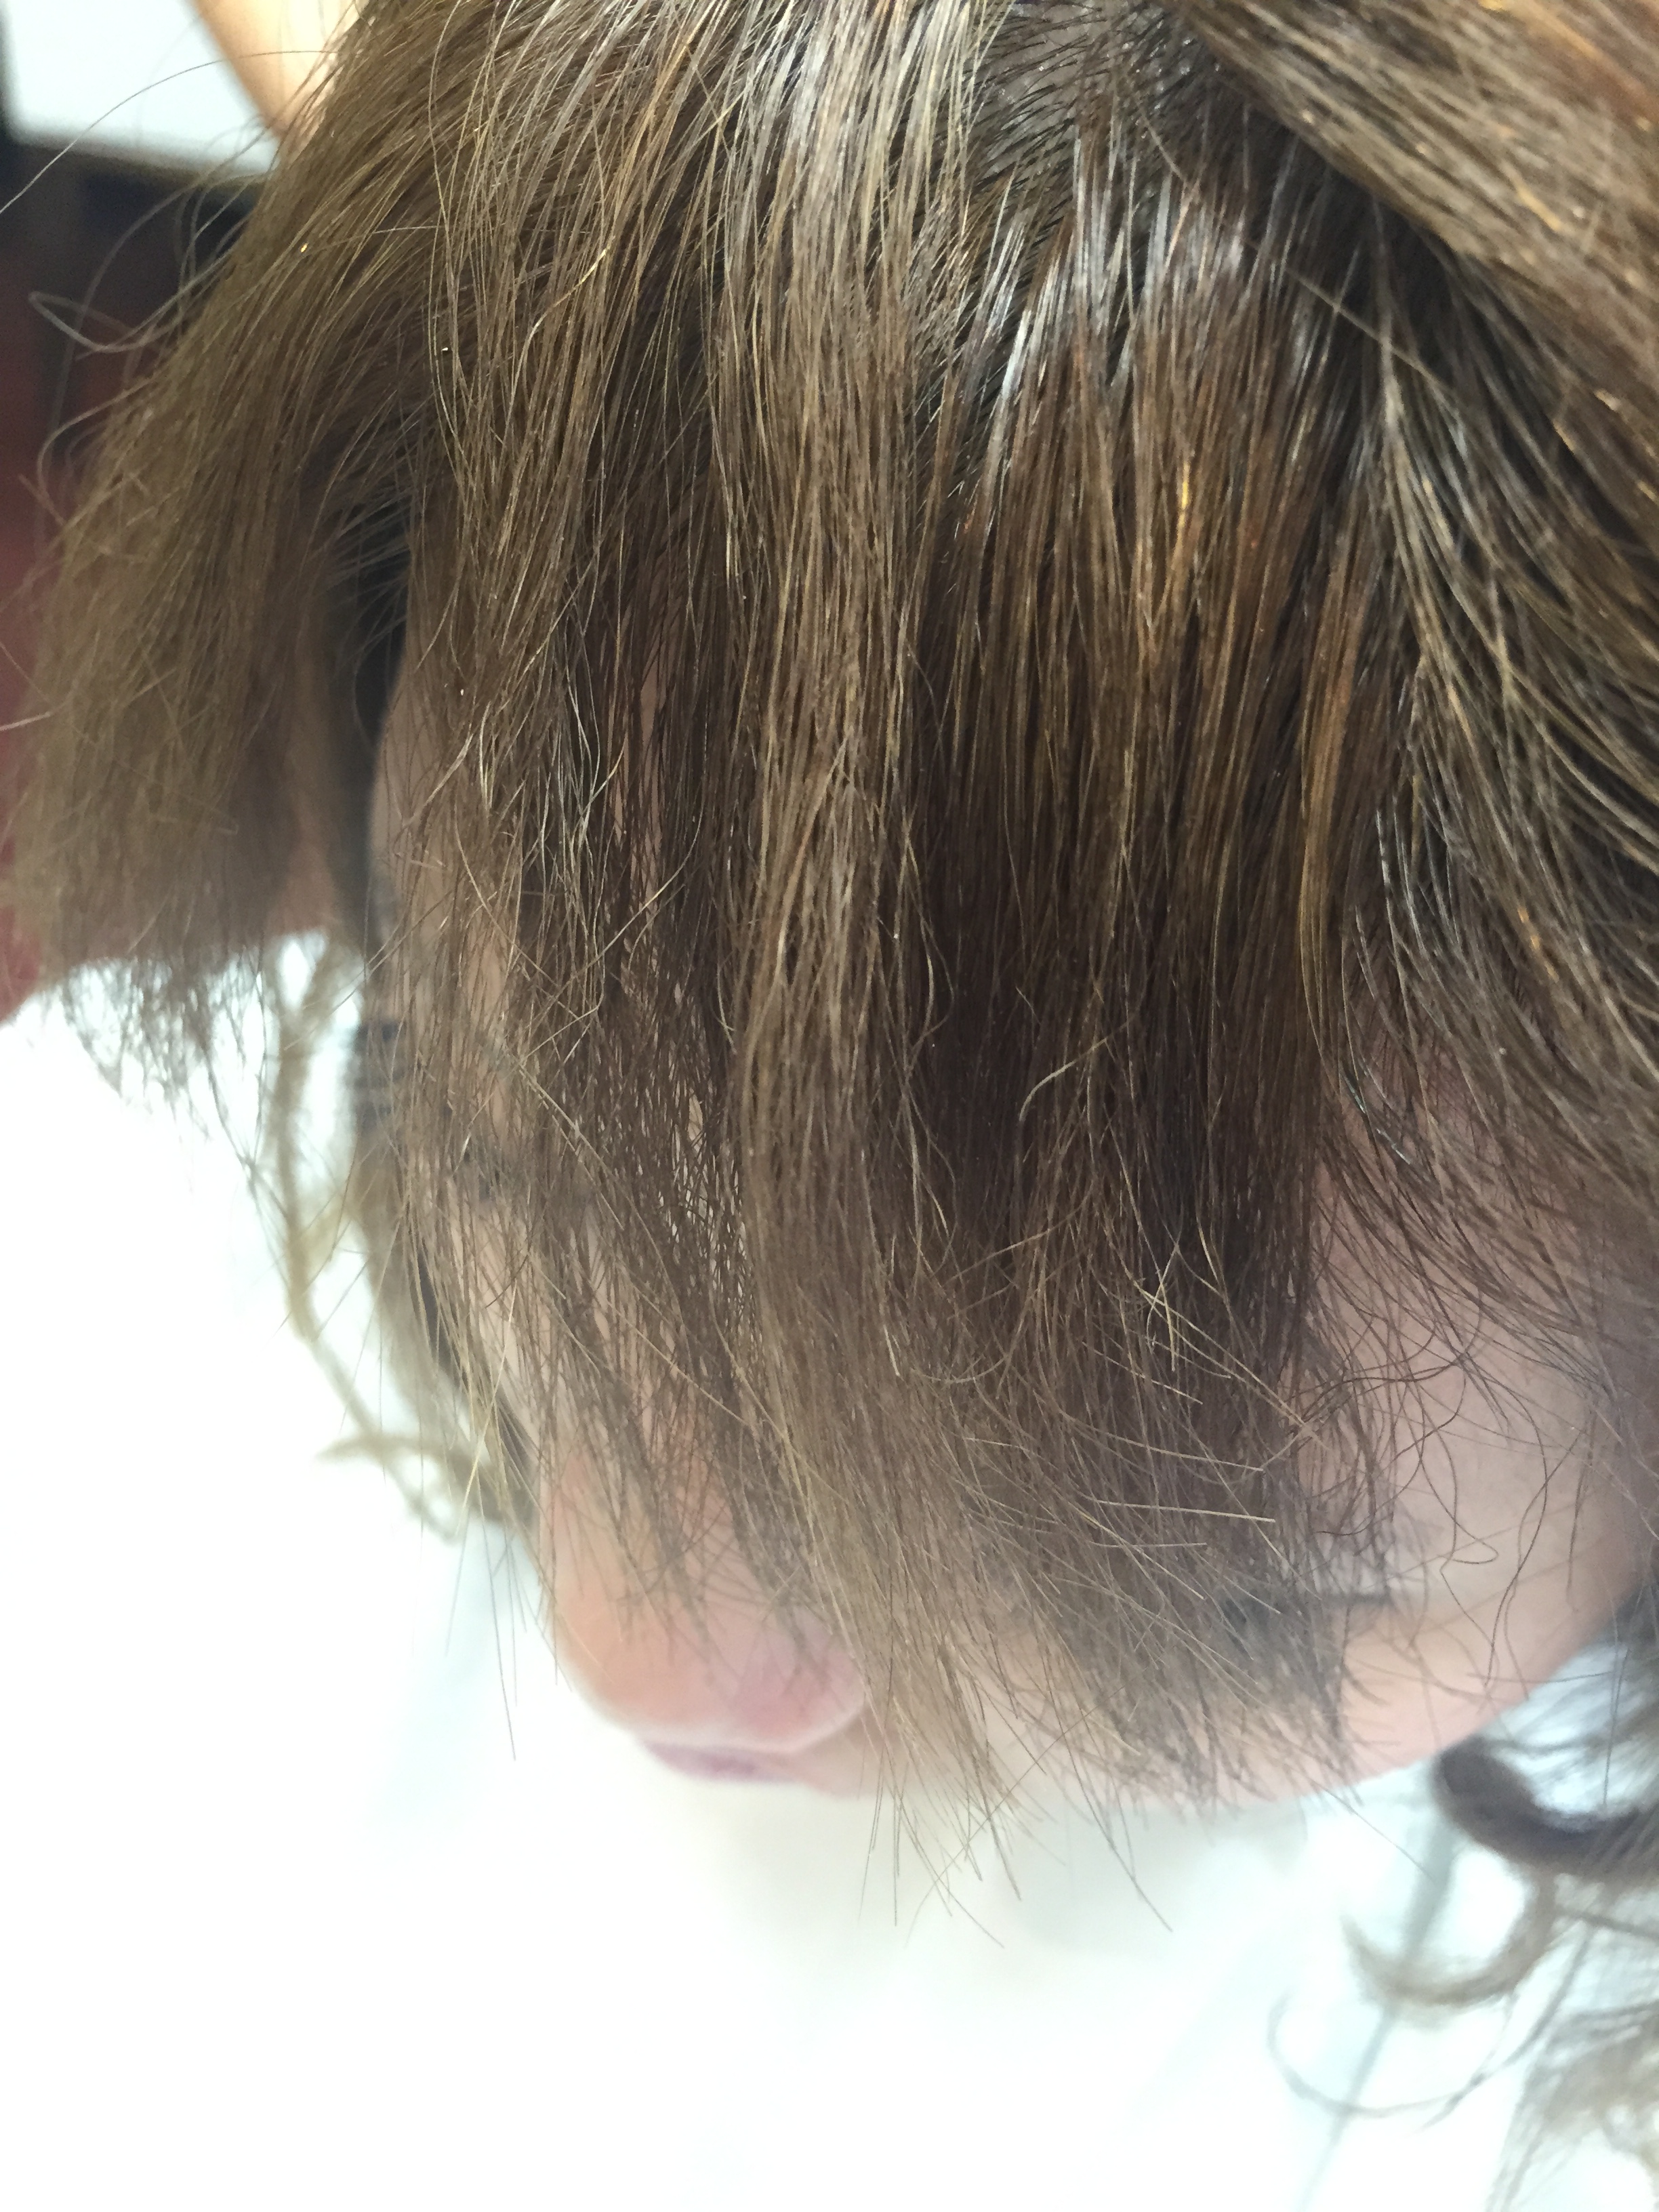 ビビリ毛修繕 縮毛矯正 デジタルパーマ ブリーチで髪が傷み切り チリチリ バサバサになってしまった髪の施術例 京都 東京の美容室 縮毛矯正 ダメージ 毛 ヘアケアに専門特化した藤原隆一の美容師ブログ